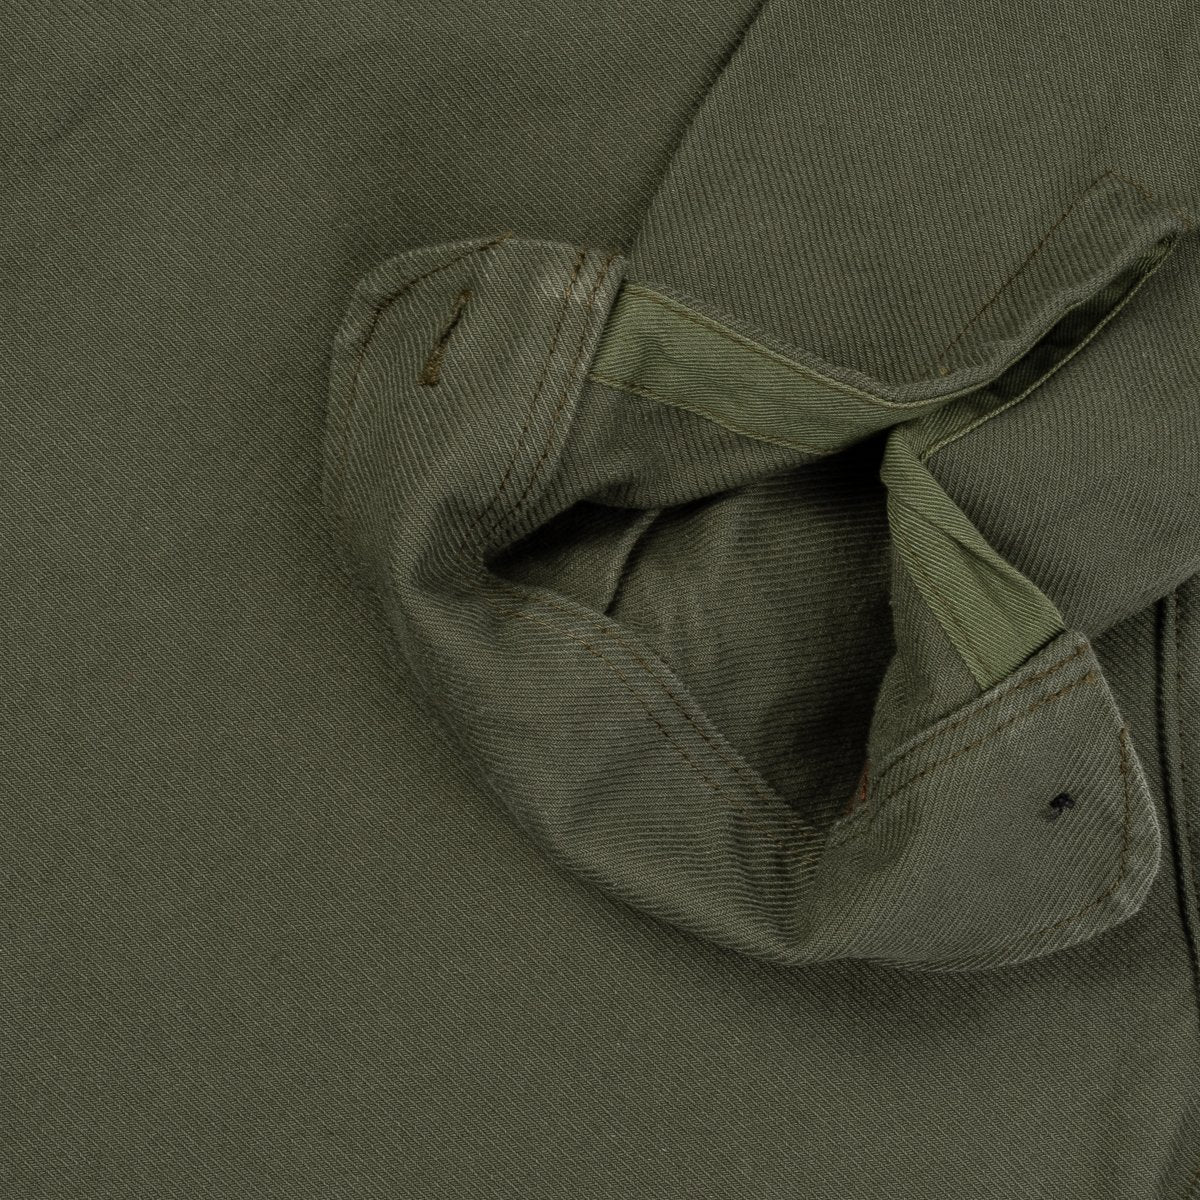 IHSH-307-ODG Military Serge Work Shirt Olive Drab Green